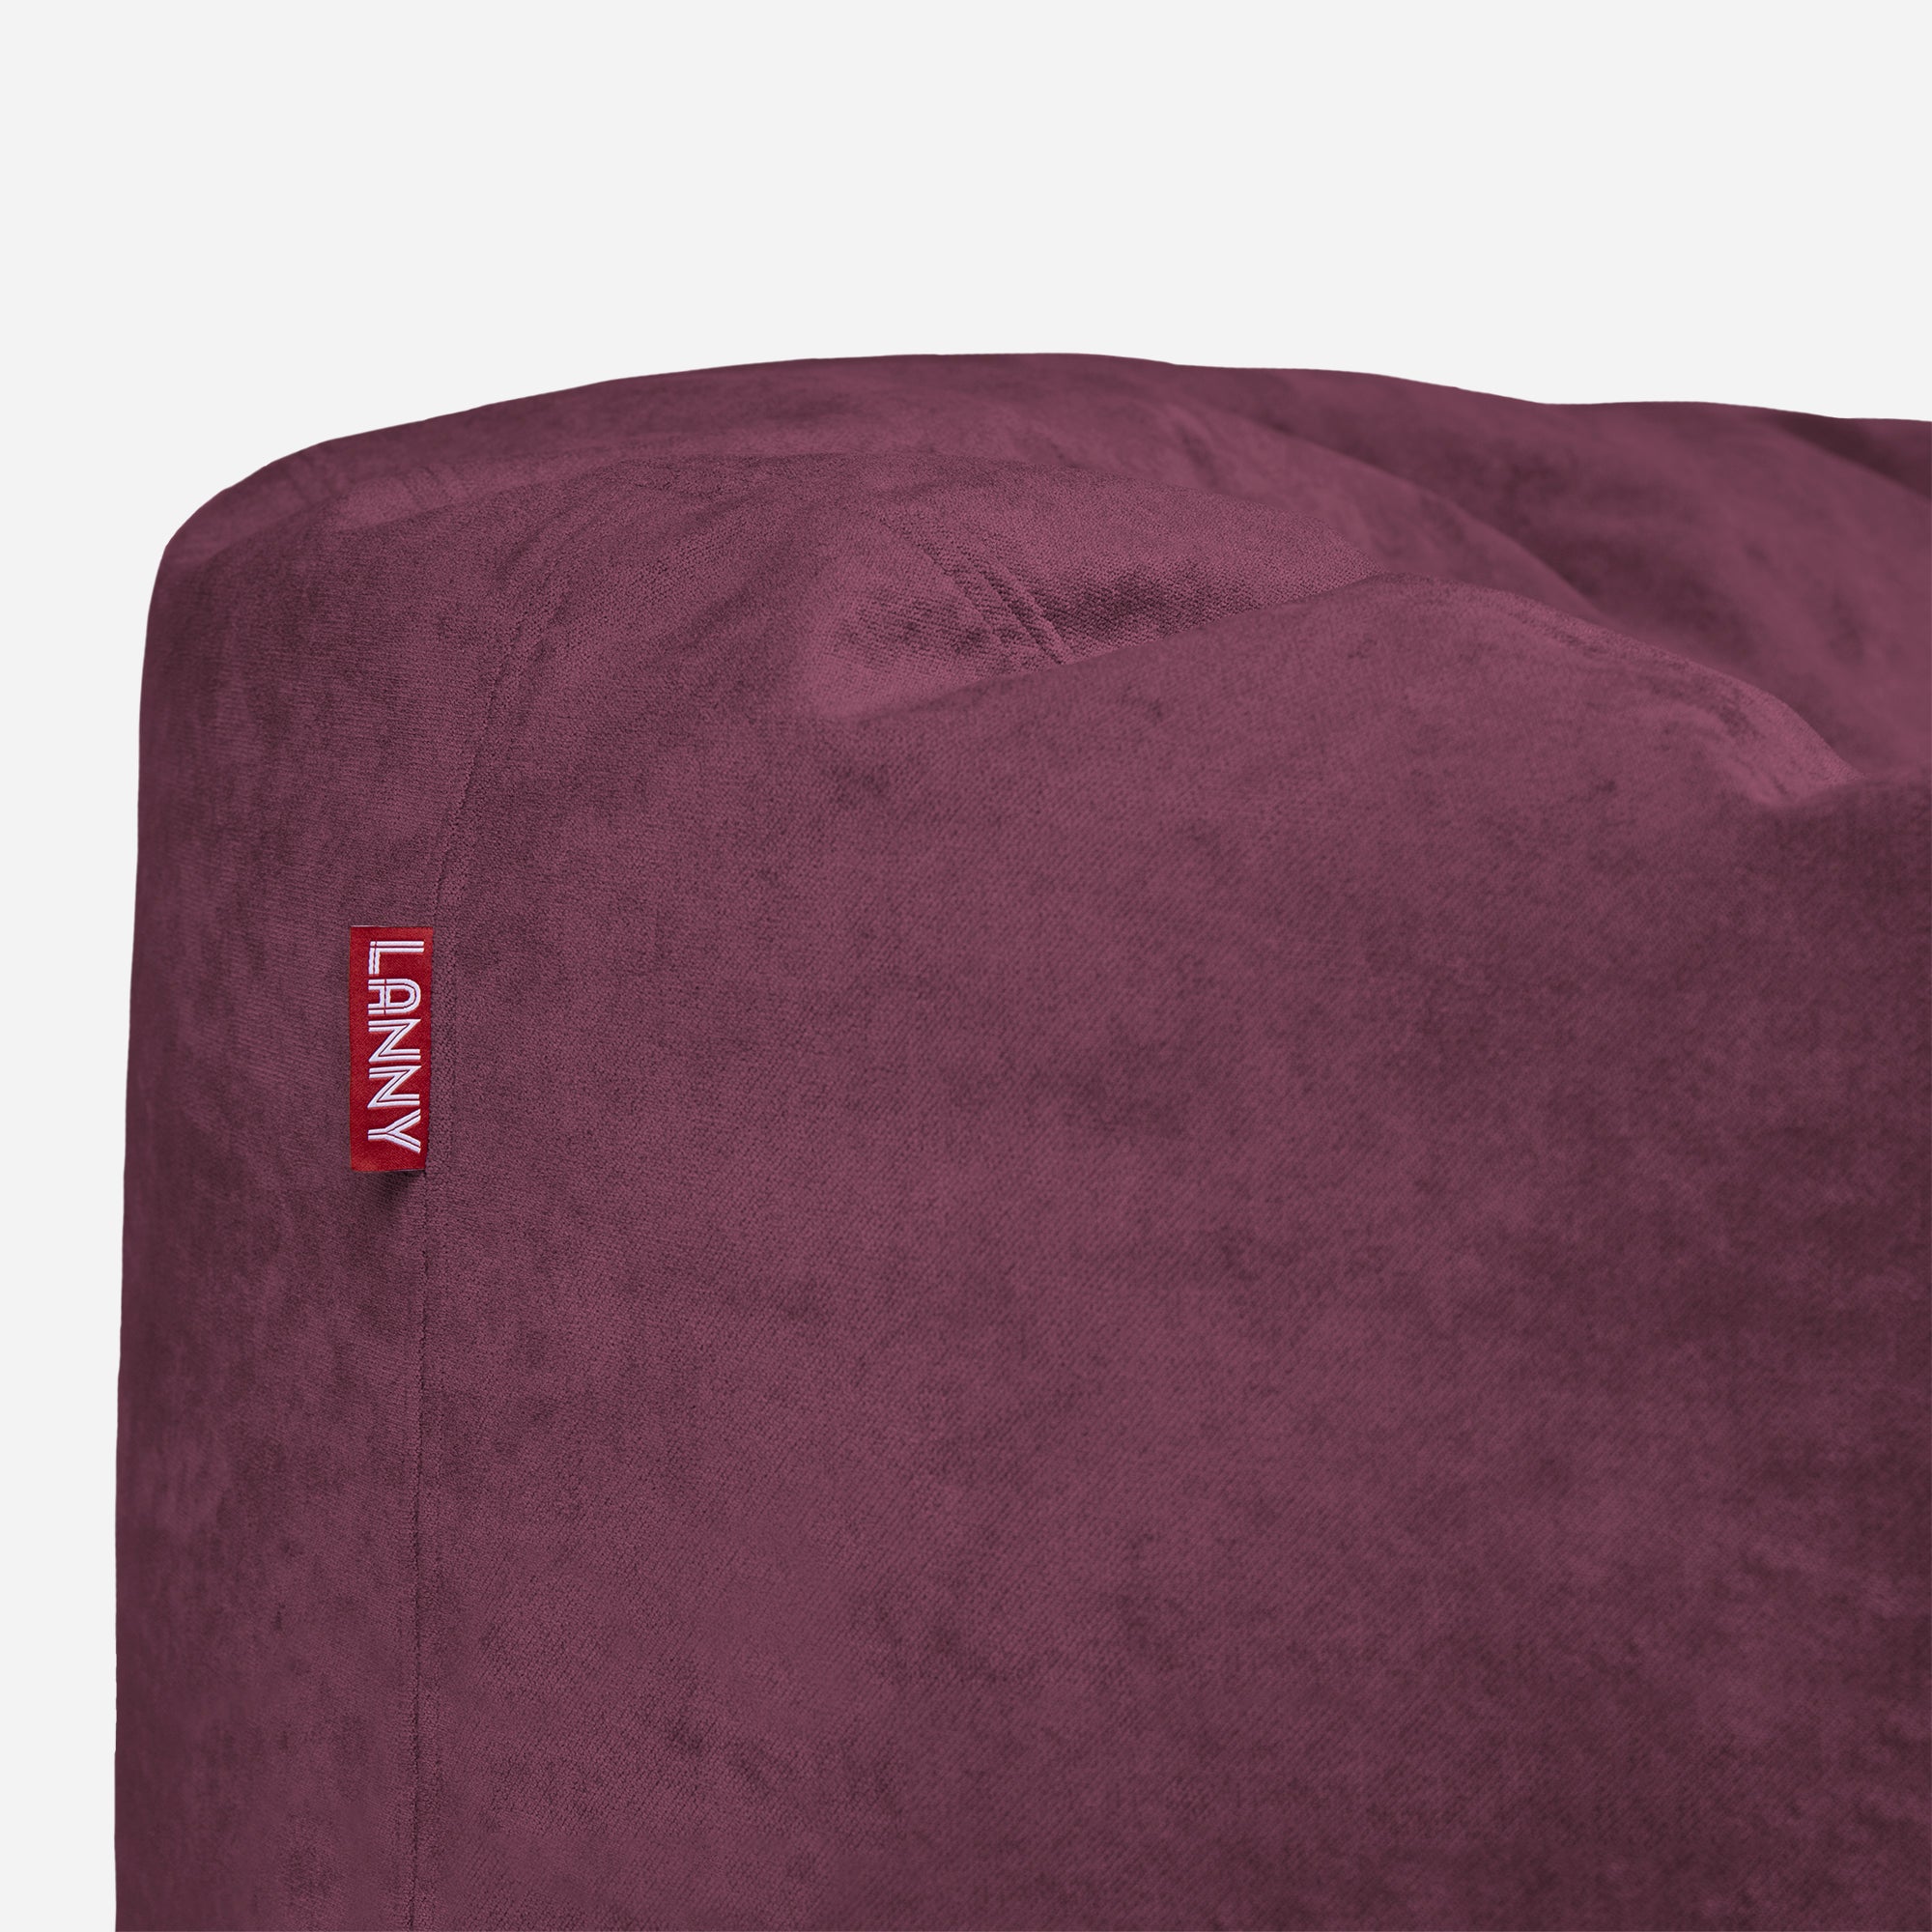 Medium Original Aldo Purple Bean Bag